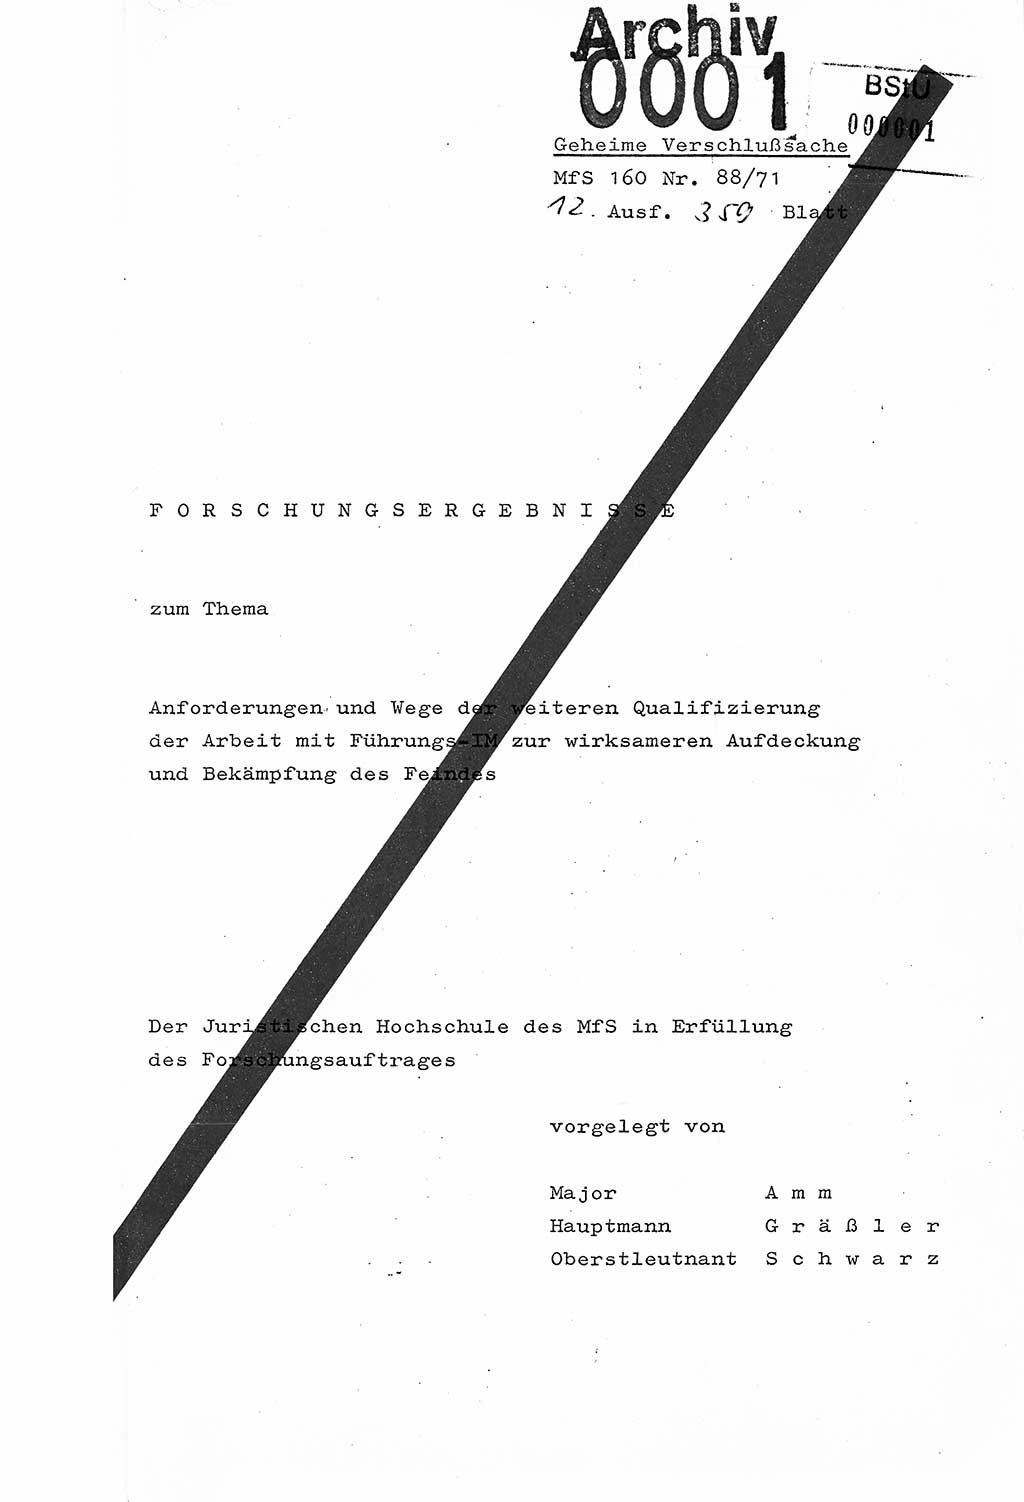 Dissertation Oberstleutnant Josef Schwarz (BV Schwerin), Major Fritz Amm (JHS), Hauptmann Peter Gräßler (JHS), Ministerium für Staatssicherheit (MfS) [Deutsche Demokratische Republik (DDR)], Juristische Hochschule (JHS), Geheime Verschlußsache (GVS) 160-88/71, Potsdam 1972, Seite 1 (Diss. MfS DDR JHS GVS 160-88/71 1972, S. 1)